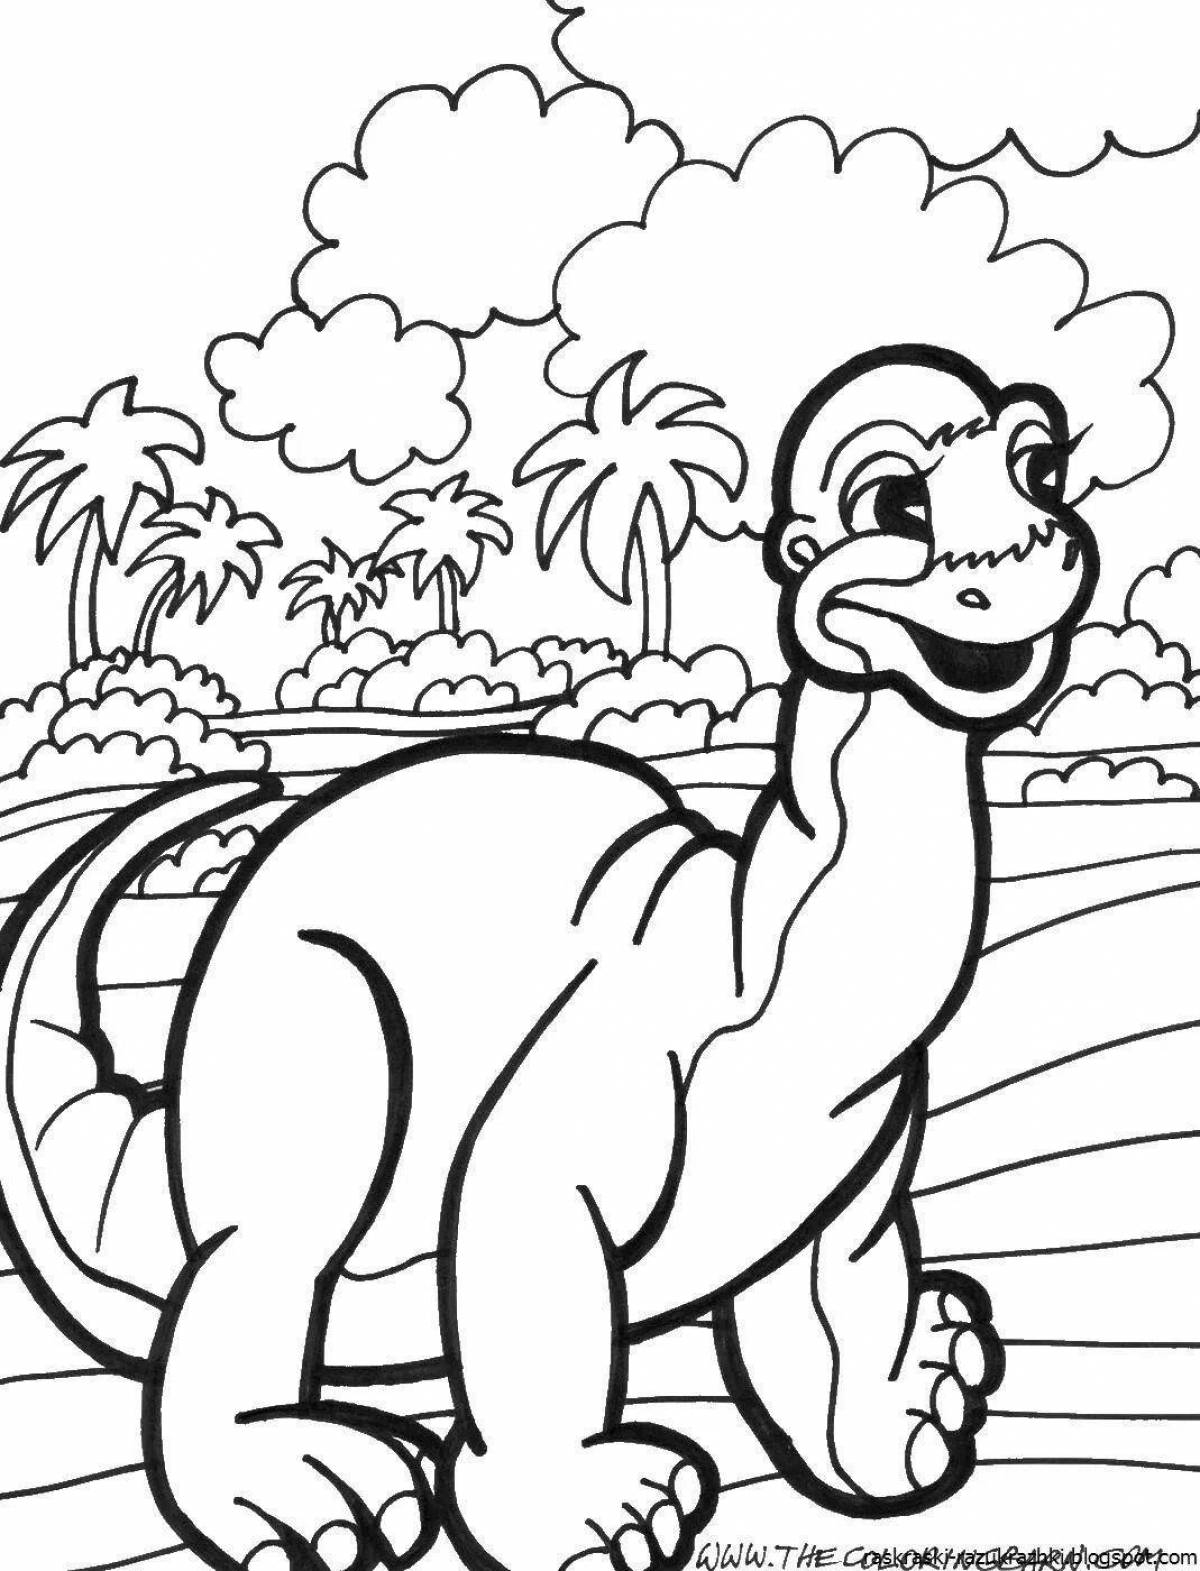 Динозавр раскраска распечатать а4. Динозавры / раскраска. Динозавры для раскрашивания детям. Динозавр раскраска для детей. Раскраска "Динозаврики".